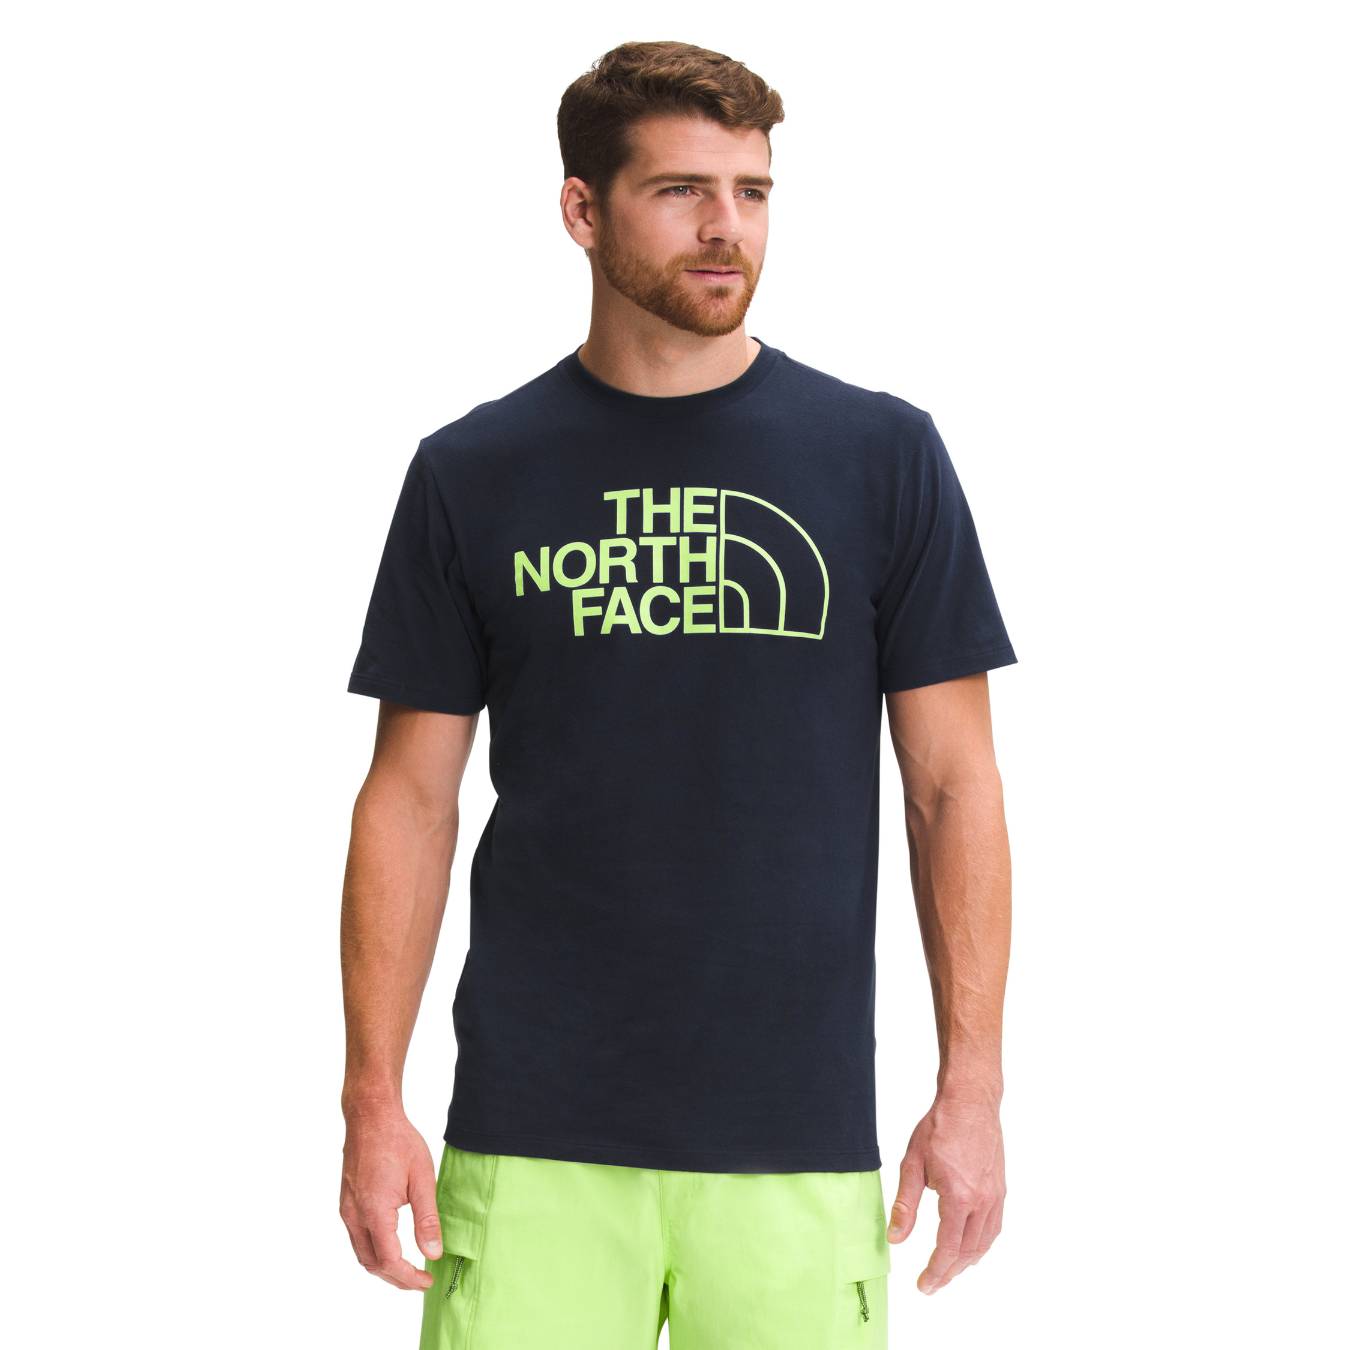 Camiseta The North Face Dome Climb Tee Hombre Azul Navy  | Outdoor Adventure Col